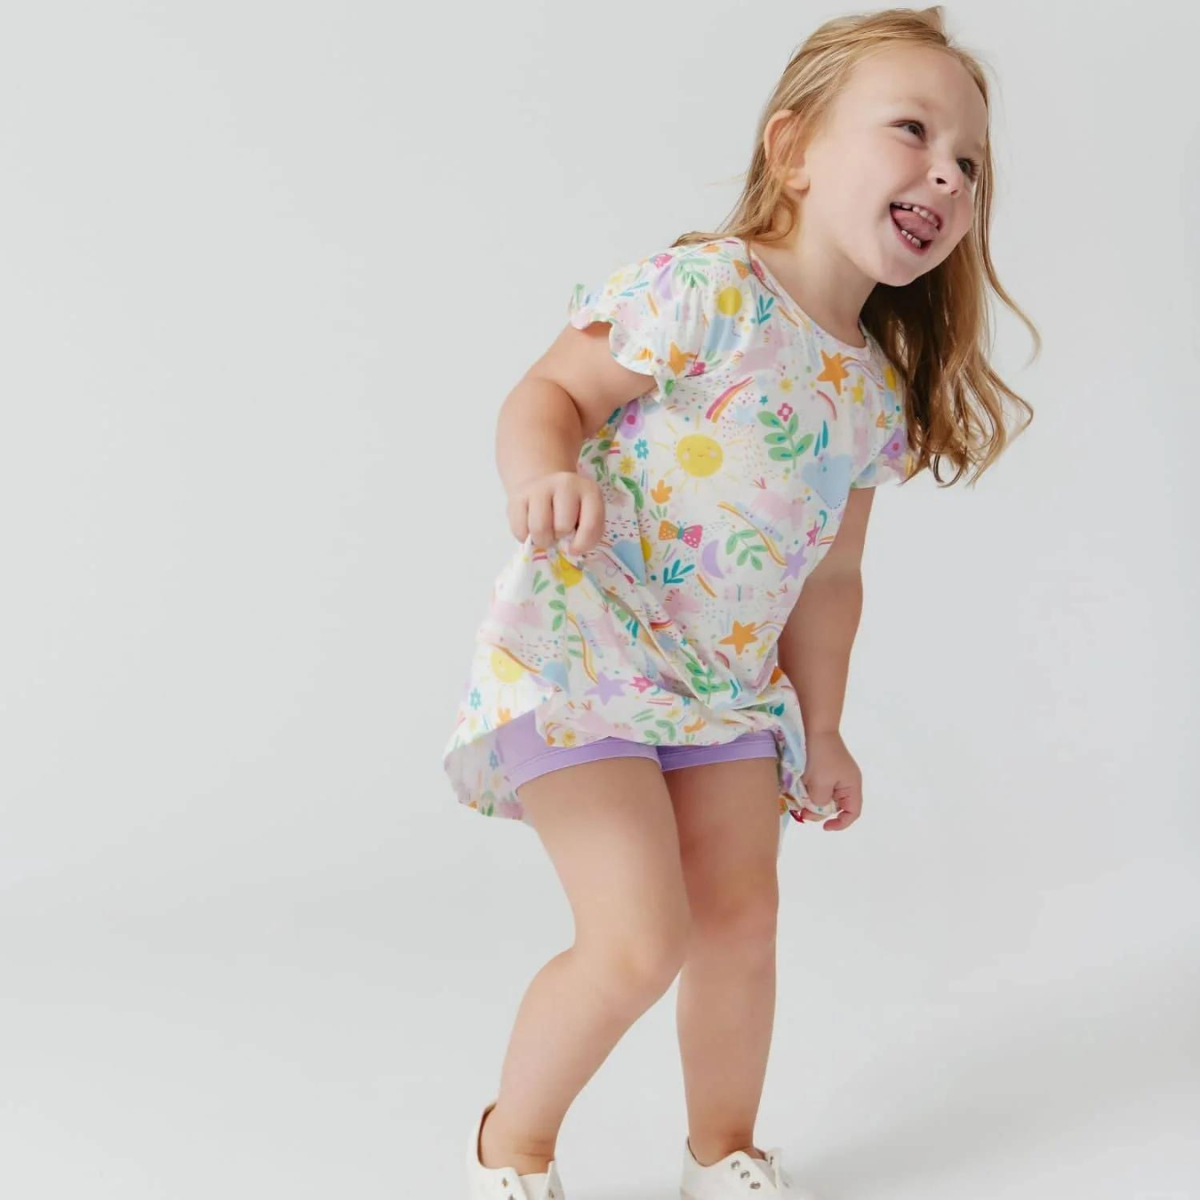 Sunny Day Vibes Modal Magnetic Toddler Top + Skort Set